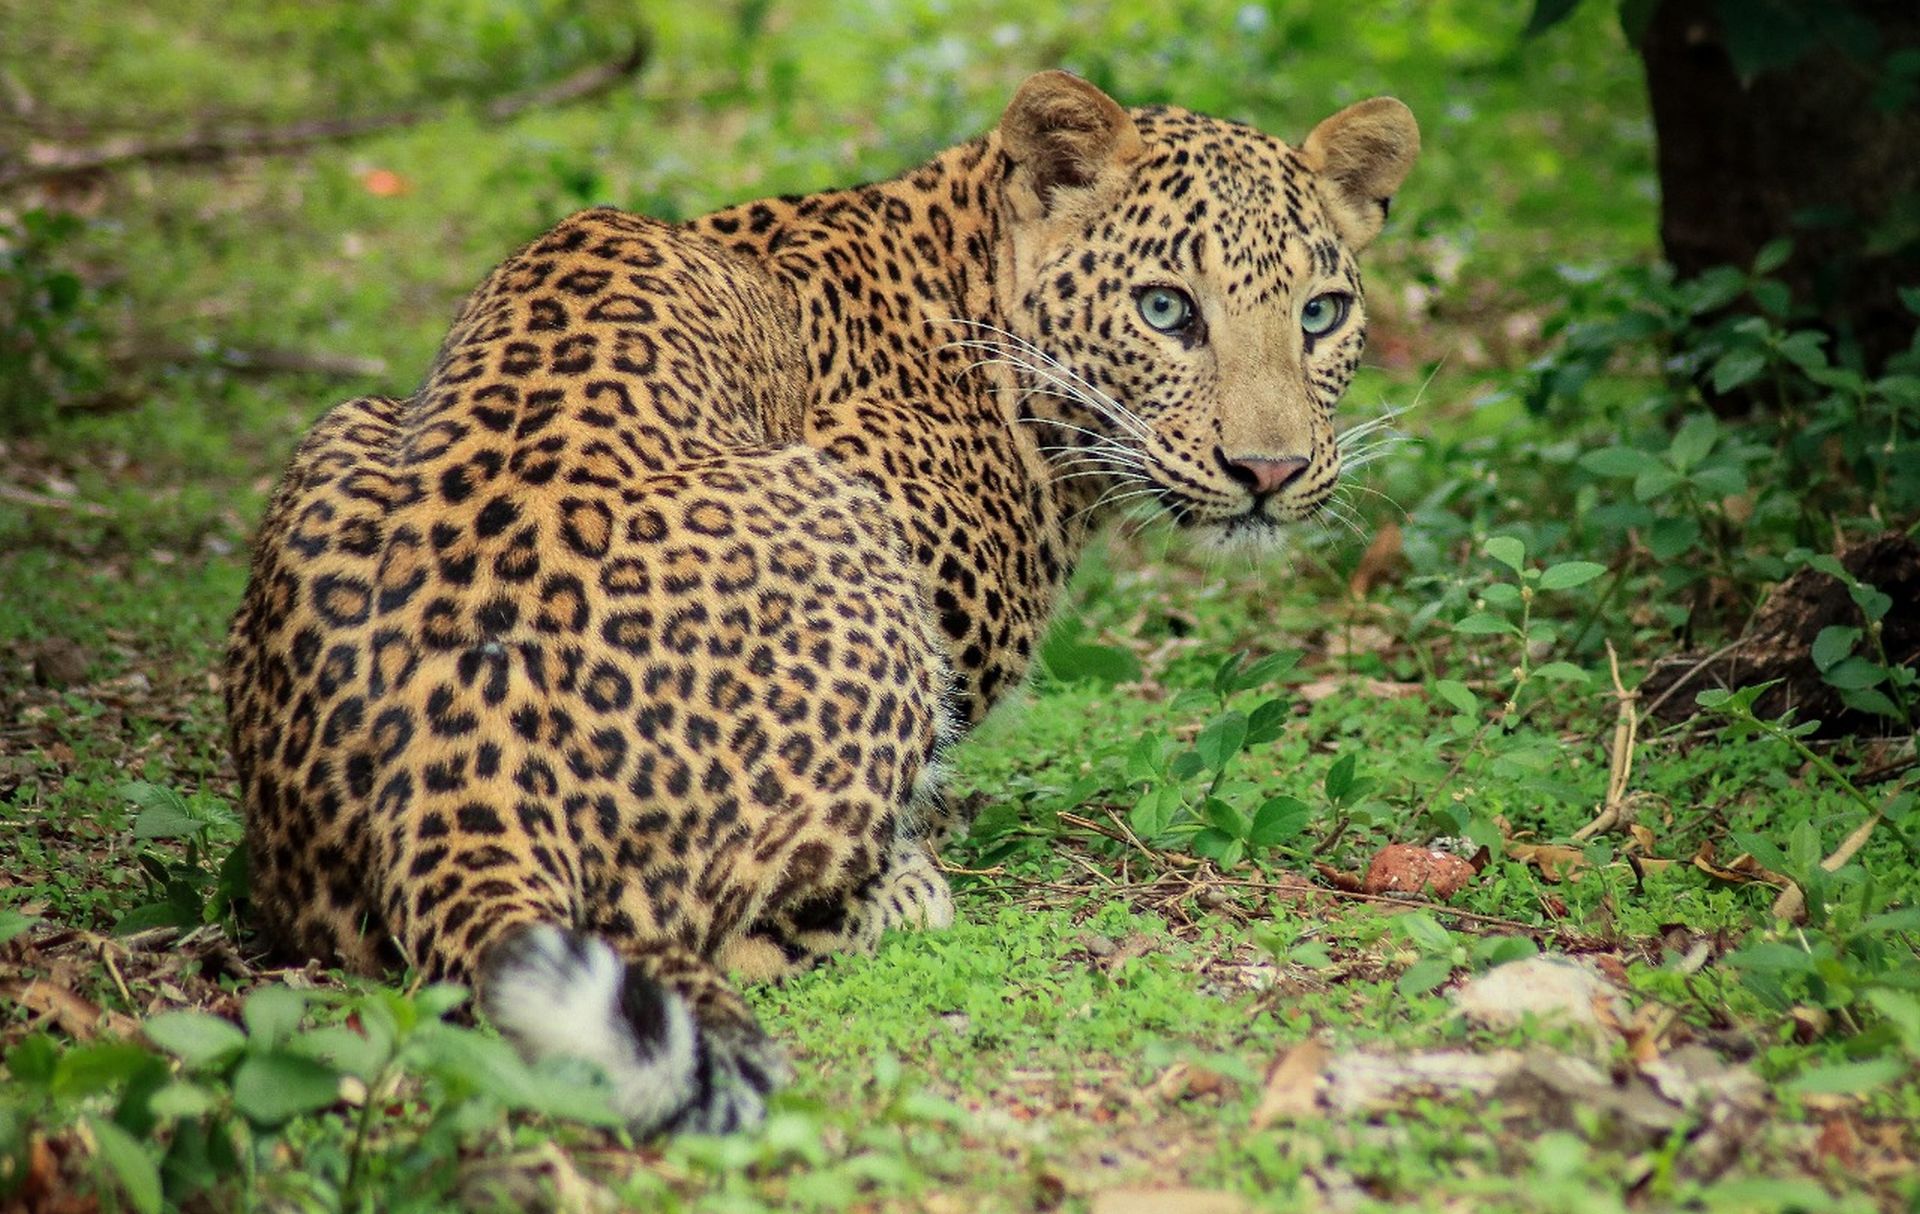 Spreading Leopard Awareness Across Maharashtra - Wildlife SOS